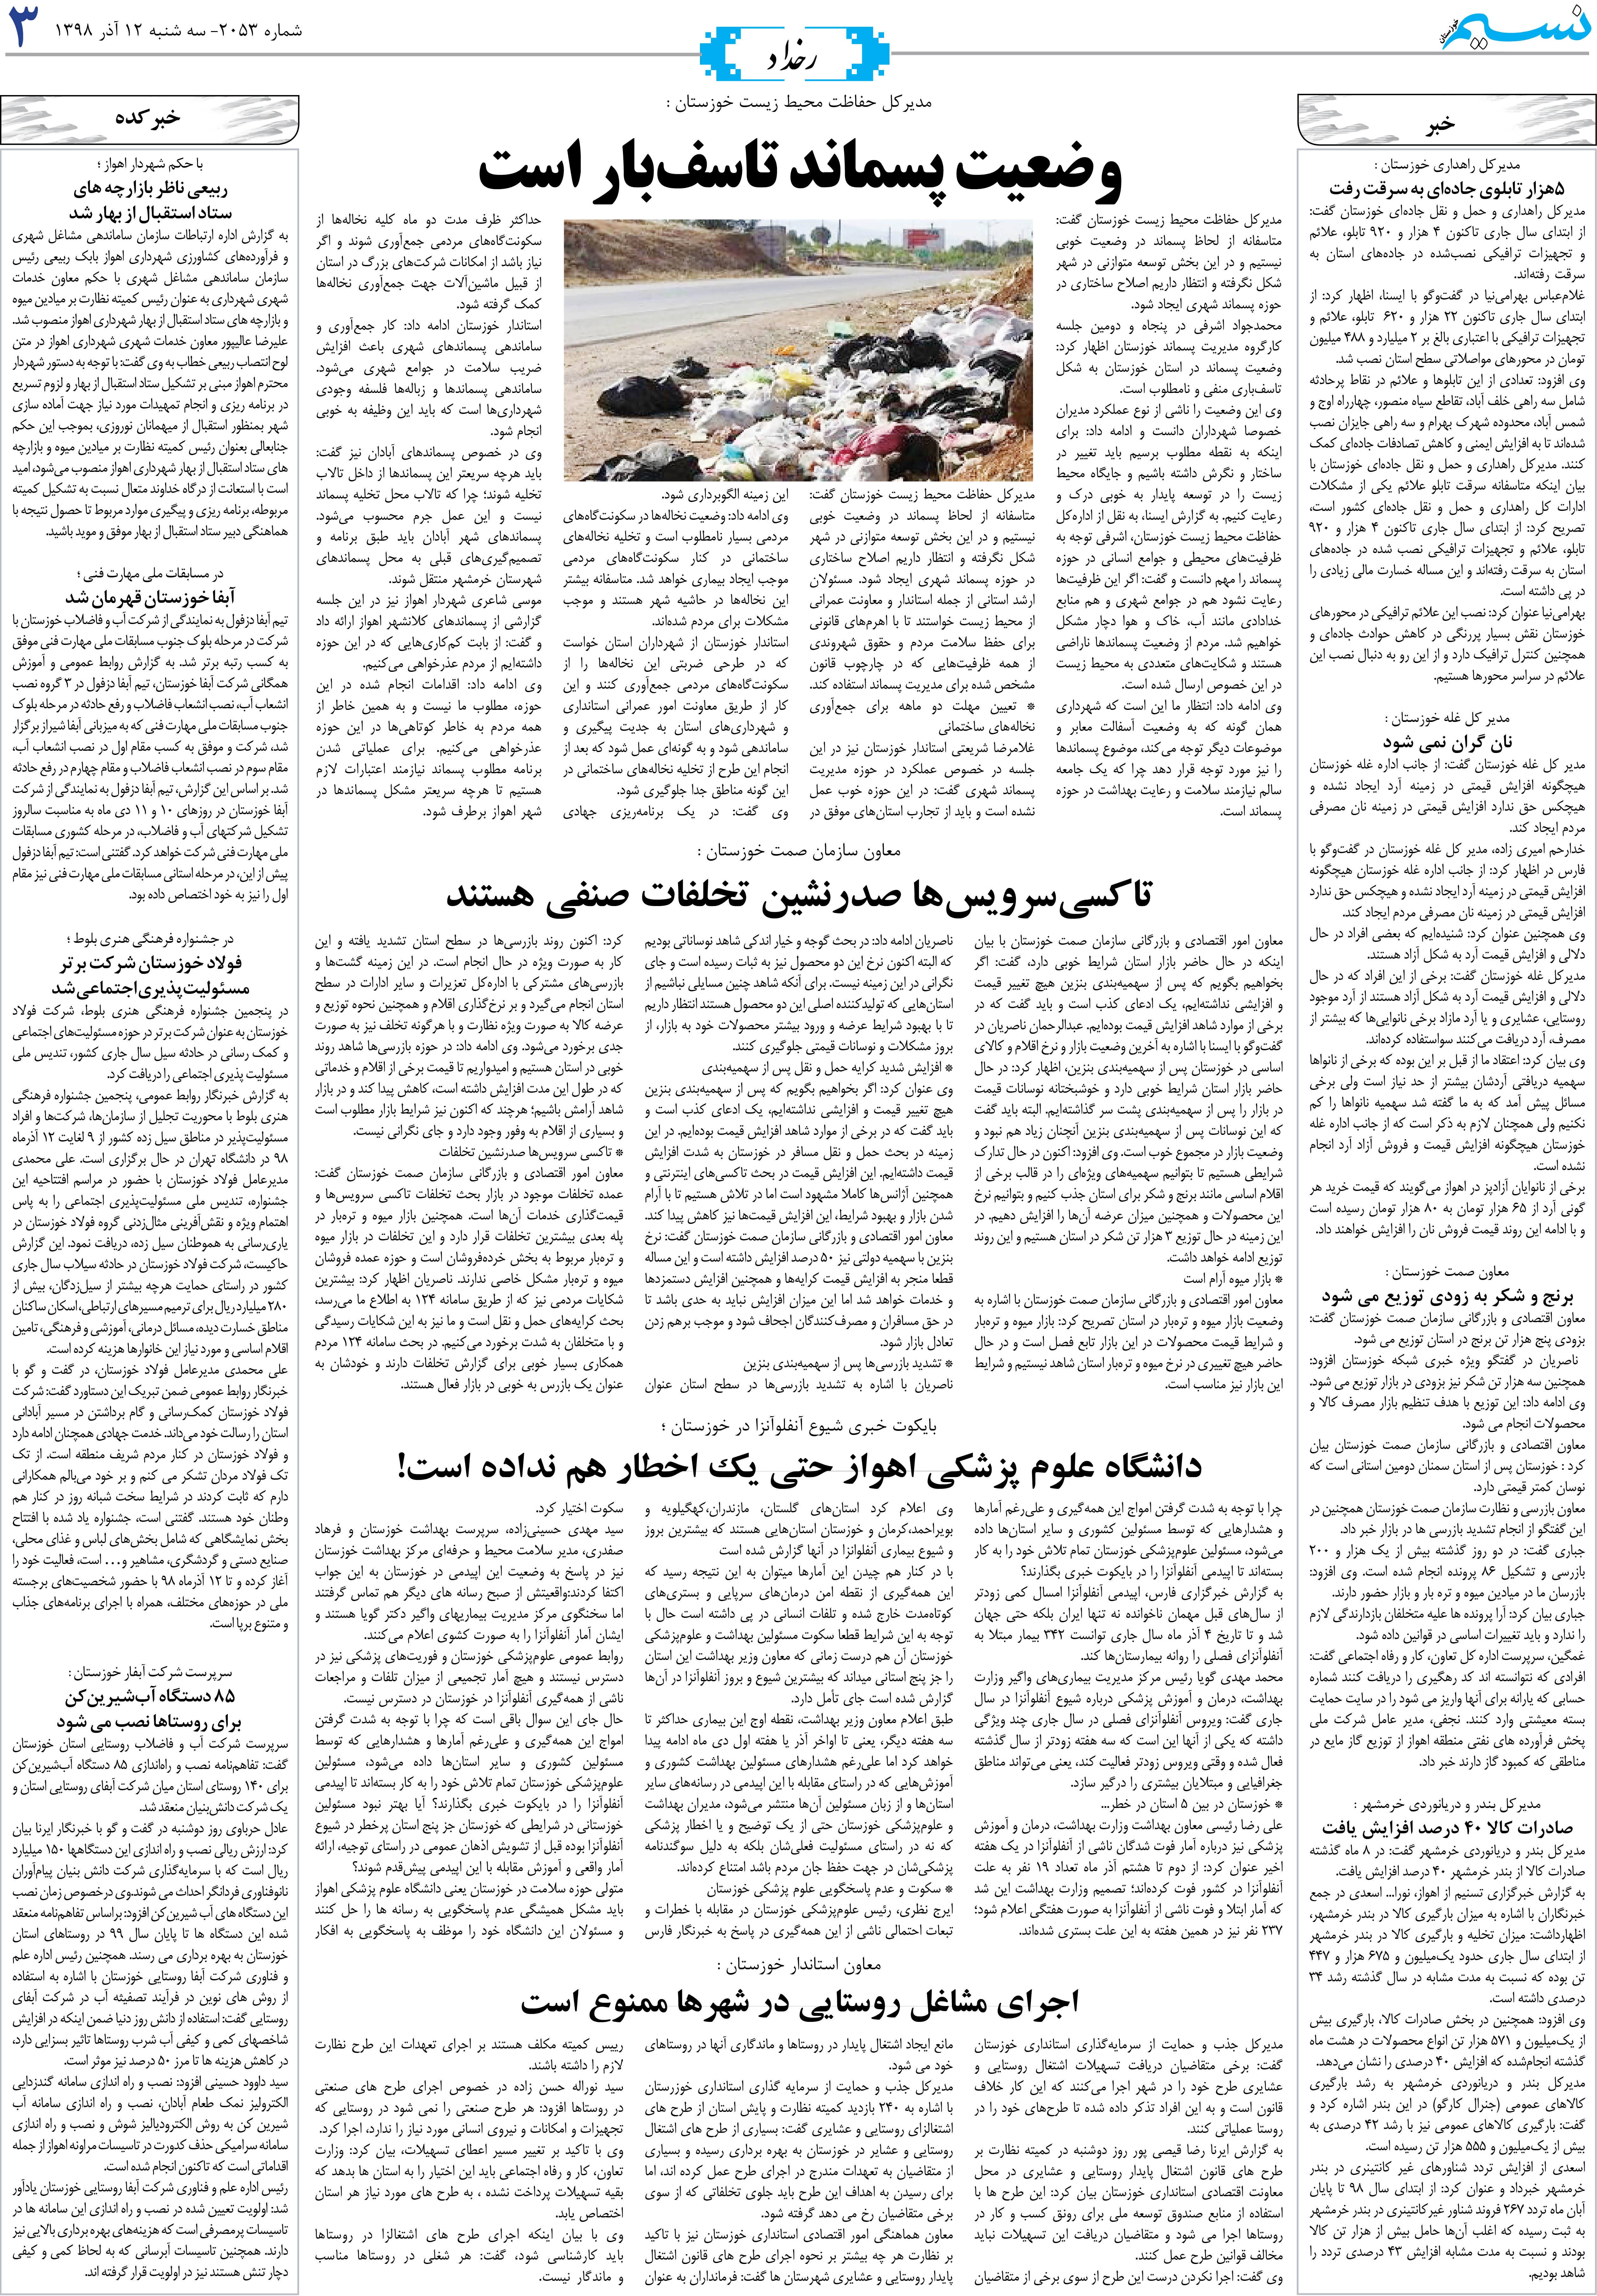 صفحه رخداد روزنامه نسیم شماره 2053